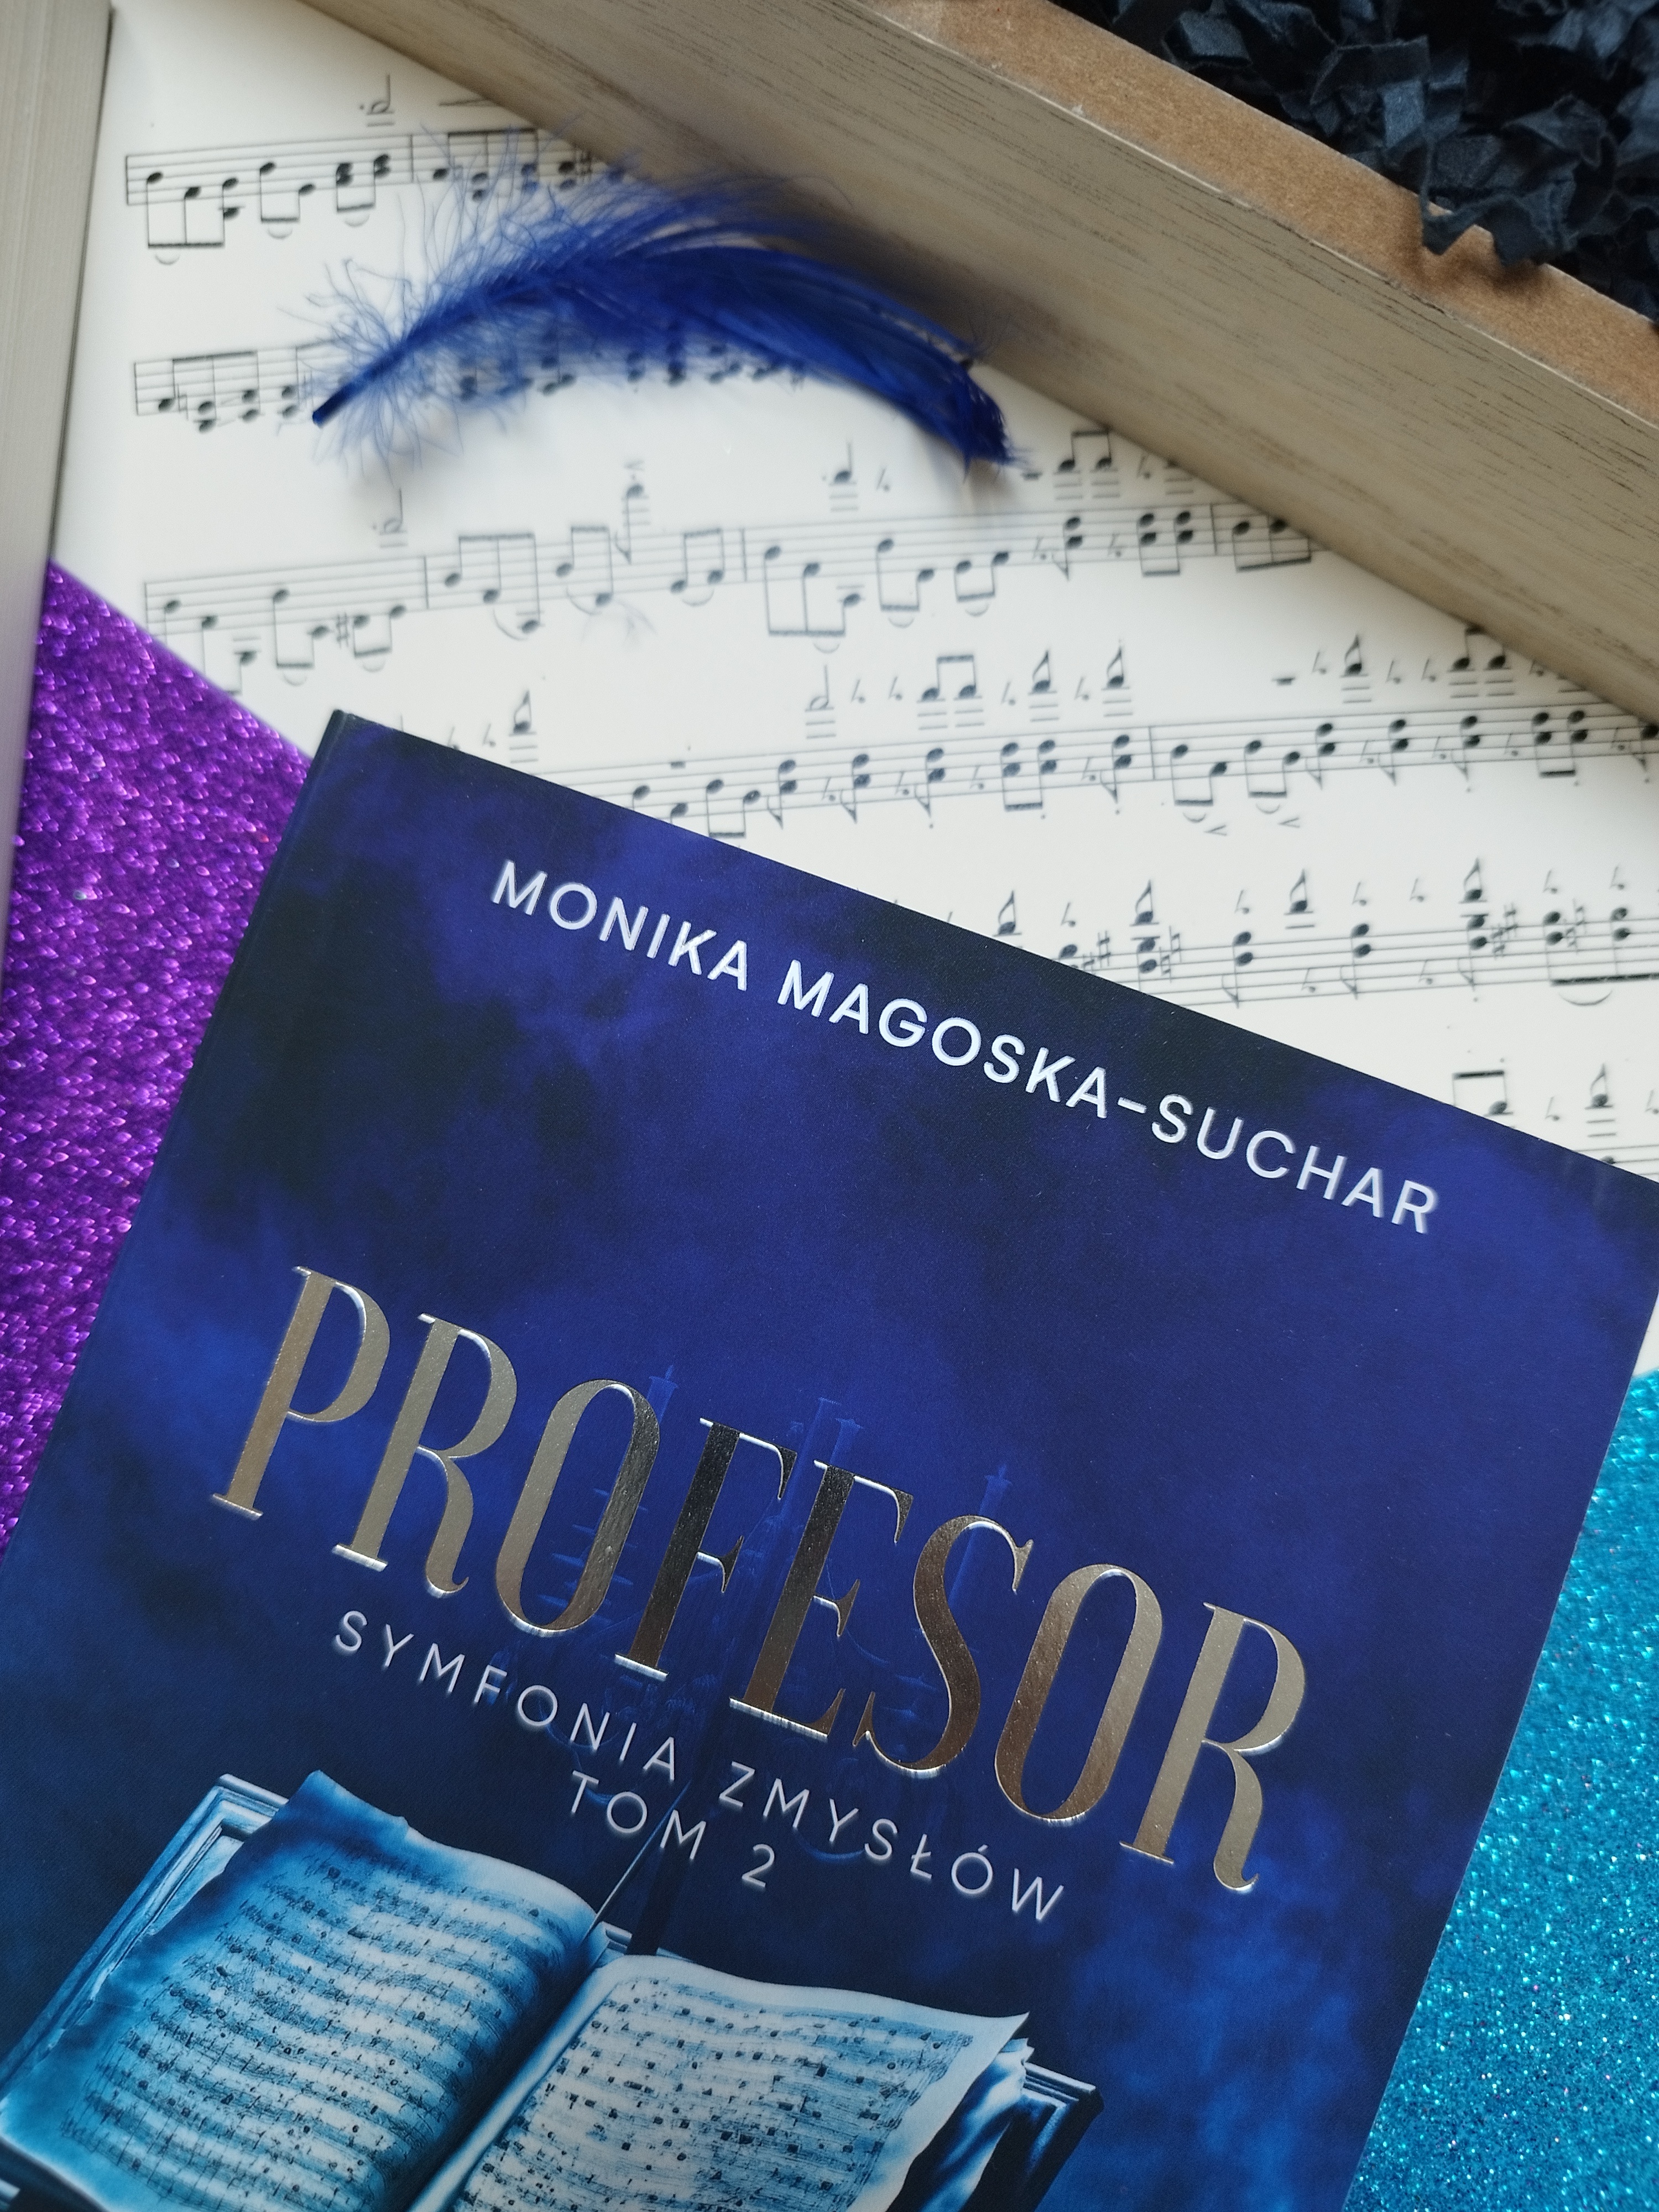 "Profesor" Monika Magoska - Suchar